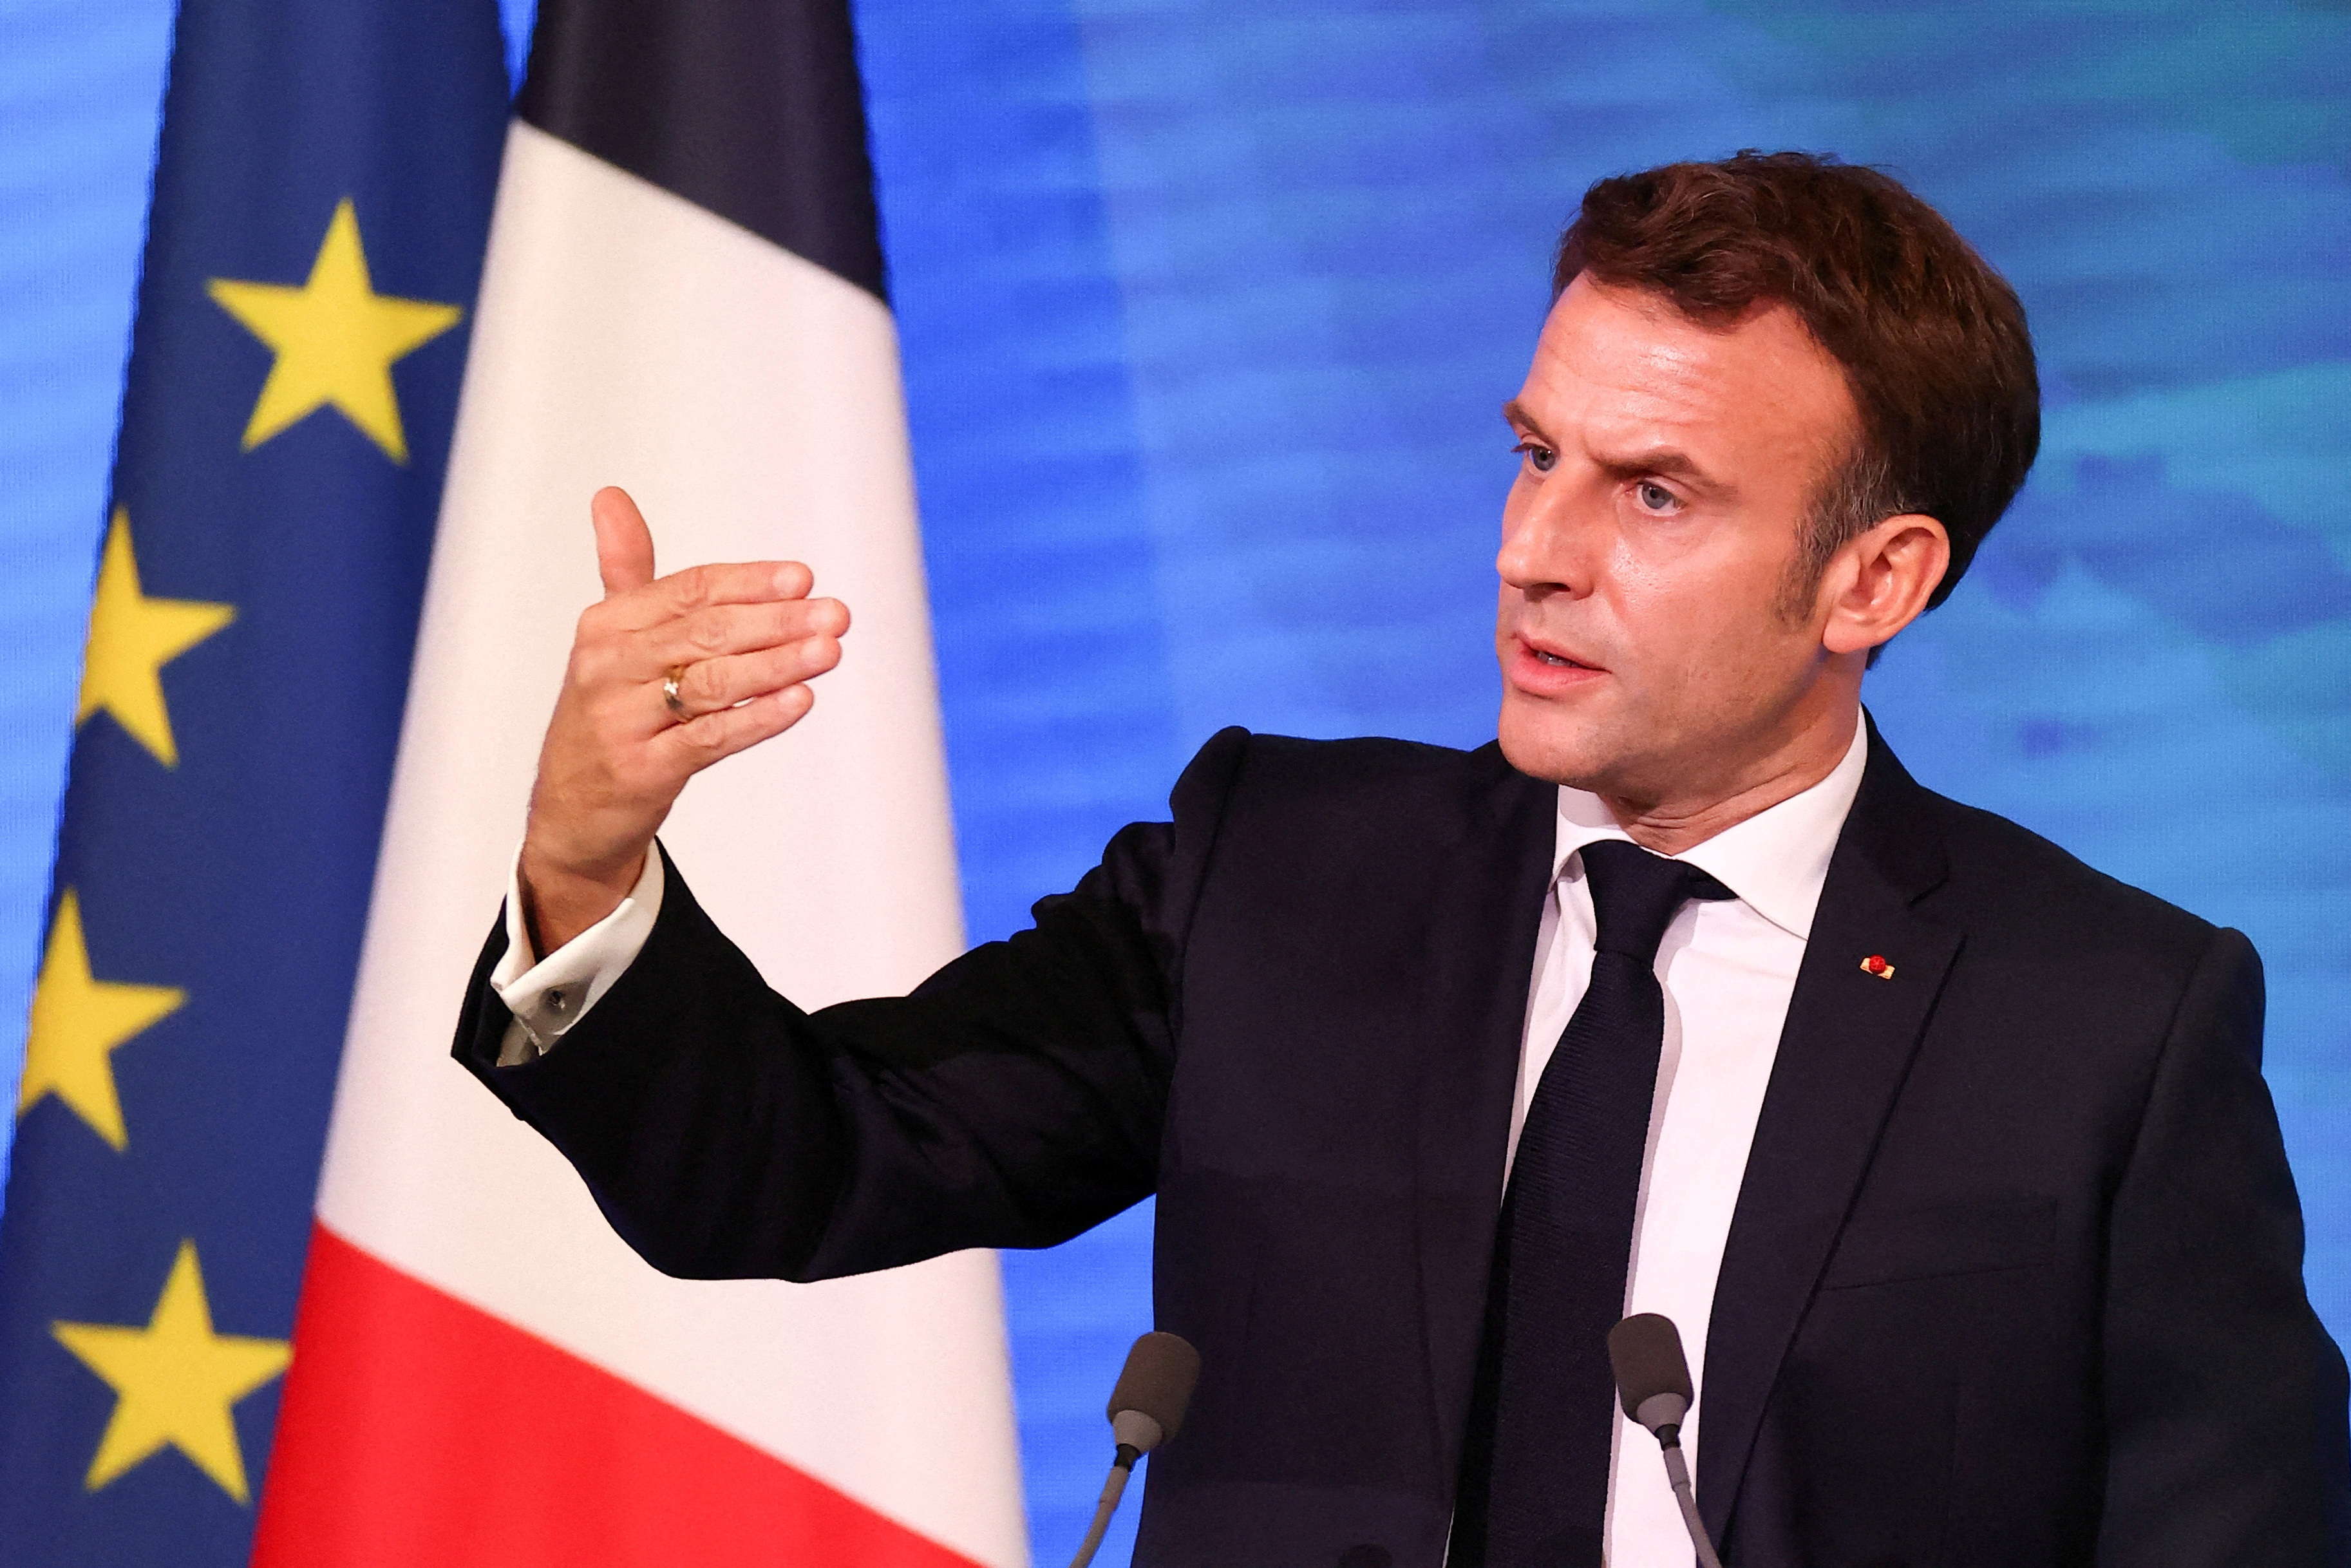 La distorsion de concurrence du plan Biden pour le climat peut « fragmenter l'Occident », prévient Emmanuel Macron